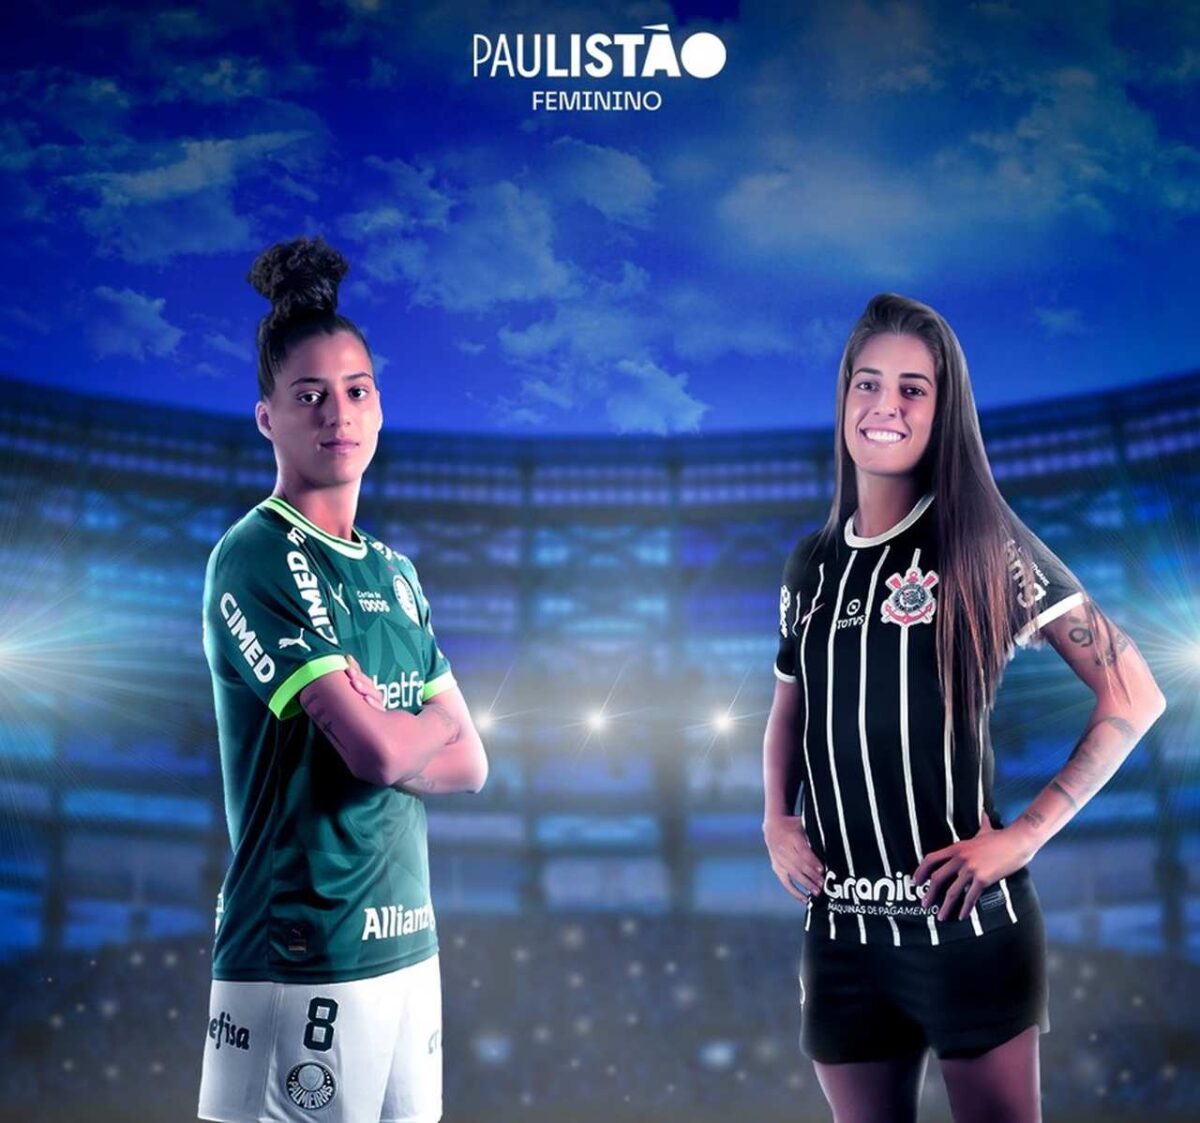 Centauro e NWB transmitem Corinthians x Palmeiras no Paulista feminino em 20 canais online